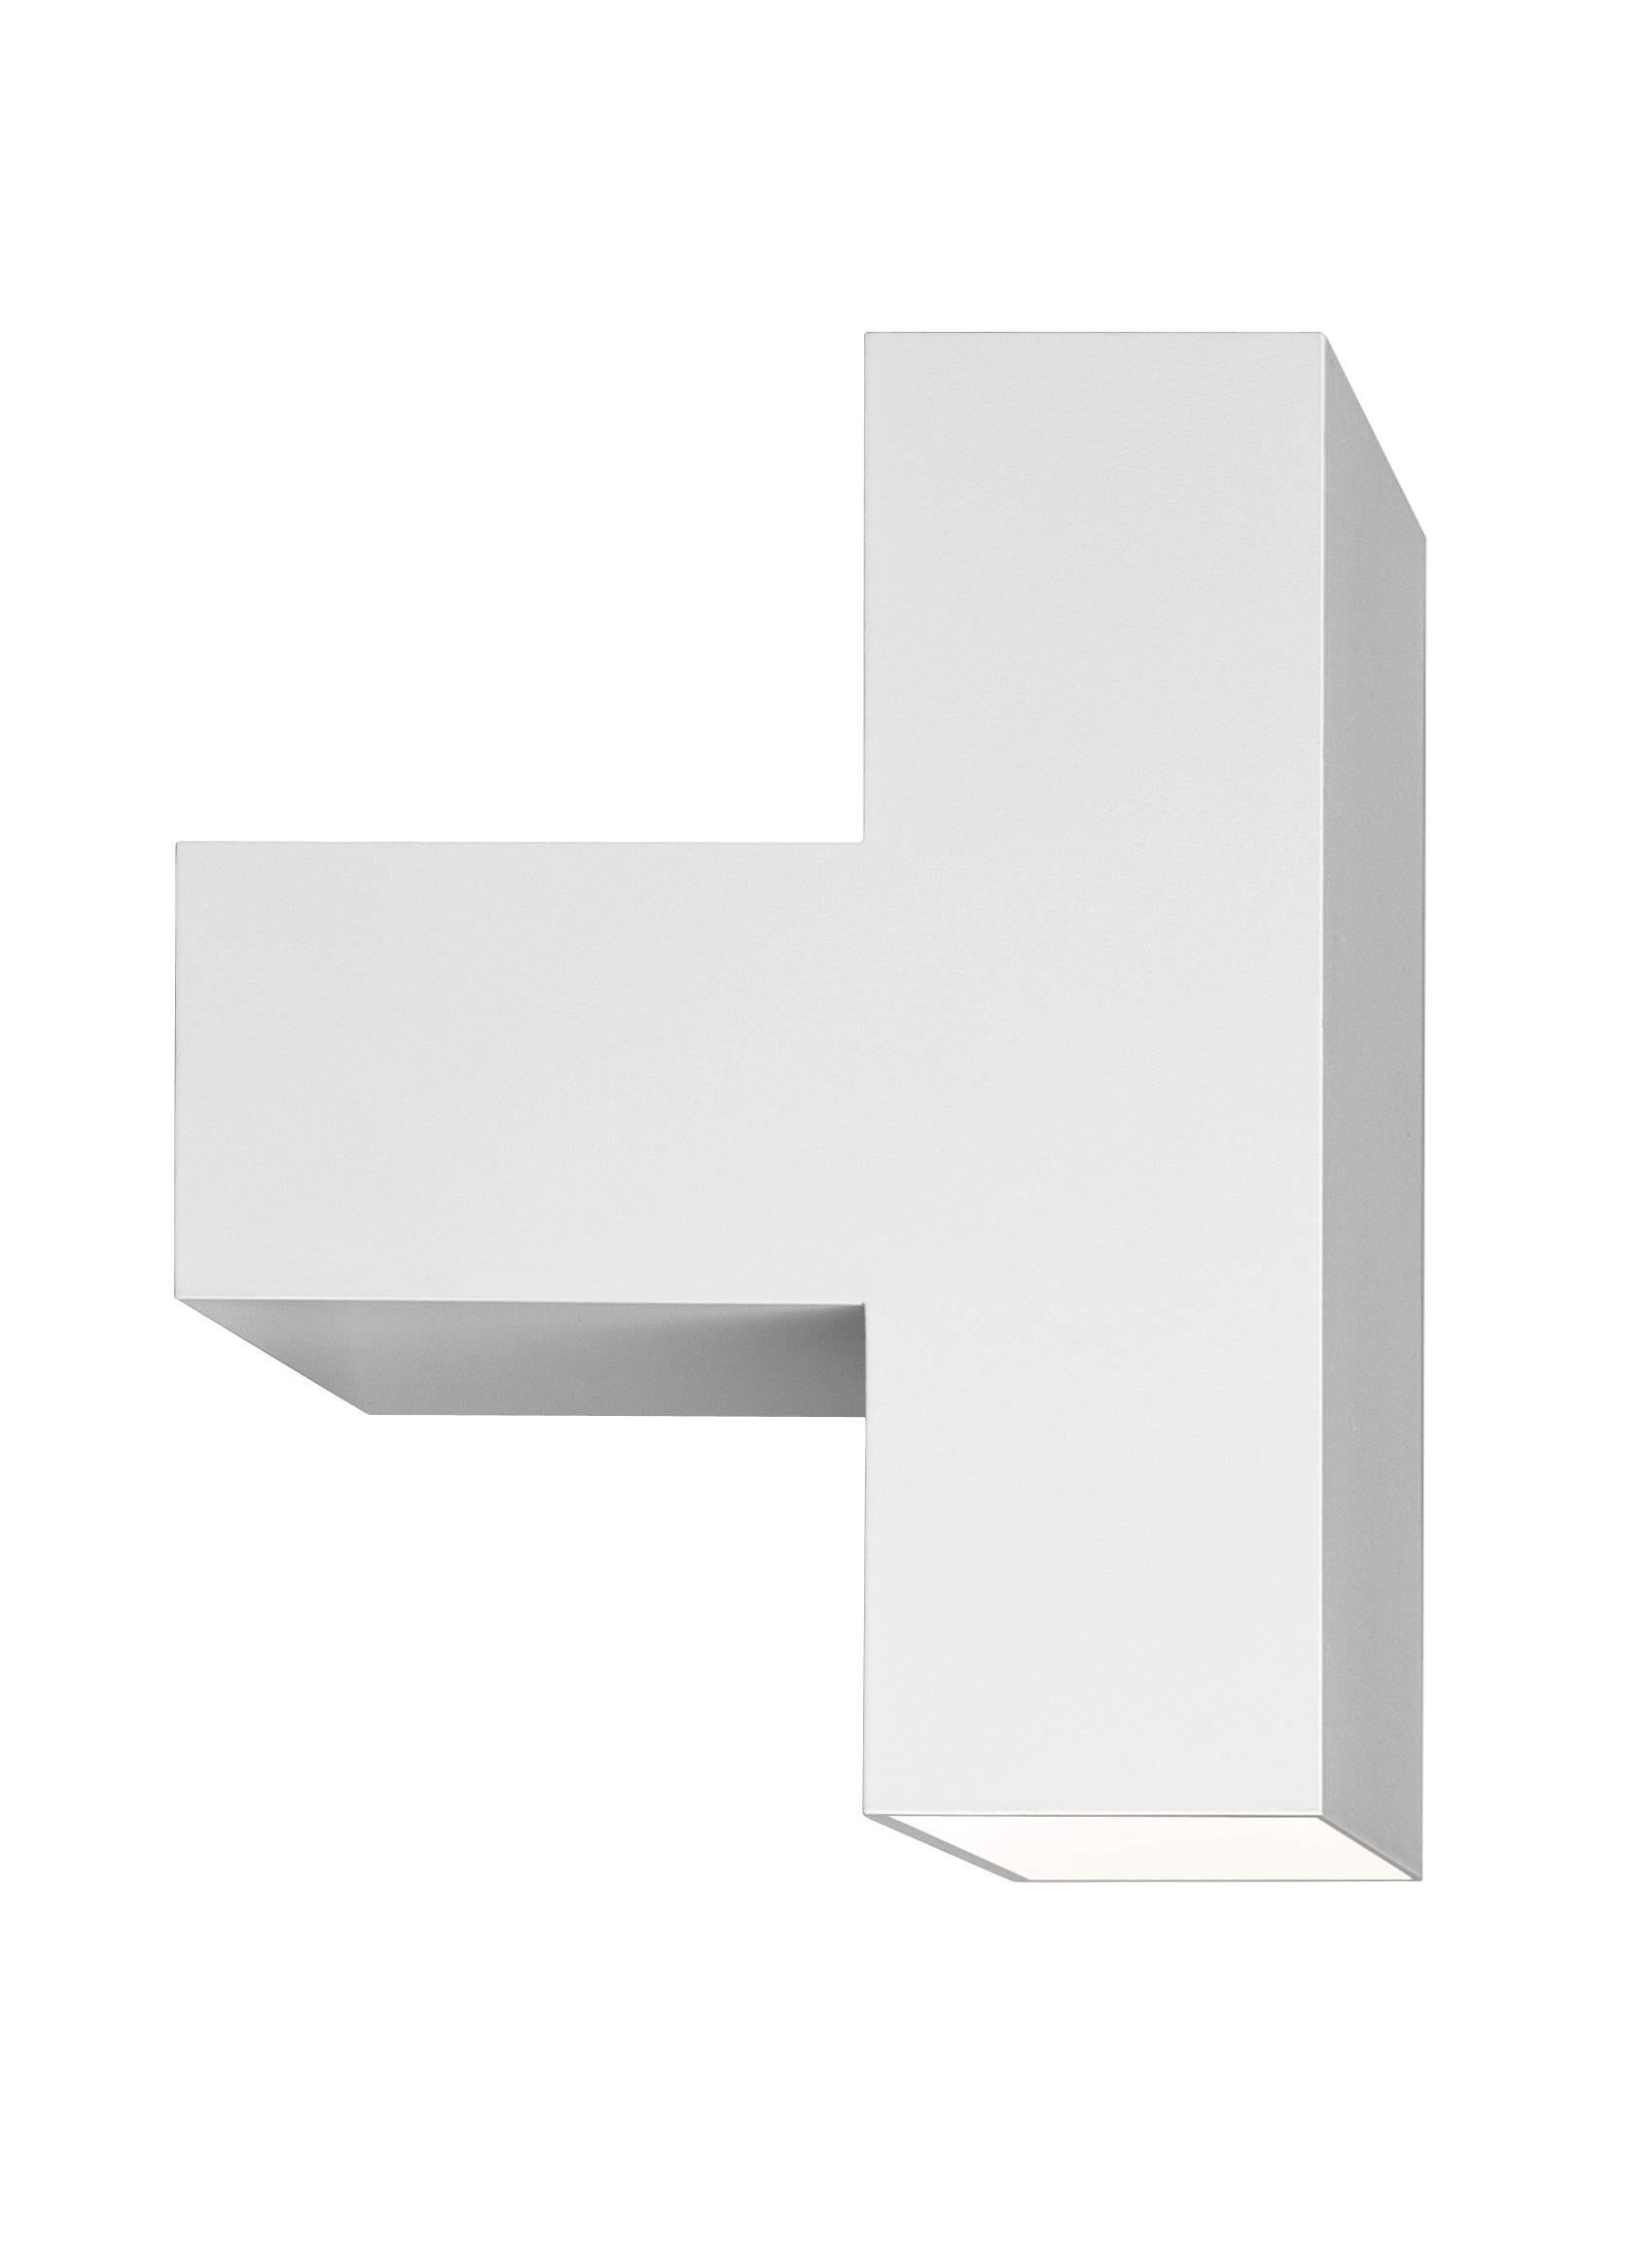 Die 2011 von Piero Lissoni entworfene Tight Light spielt mit der Größenperspektive und erzielt hervorragende Ergebnisse. Der Hauptkörper dieser Wandleuchte besteht aus weiß lackiertem, stranggepresstem Aluminium. Die seitlichen Friese bestehen aus